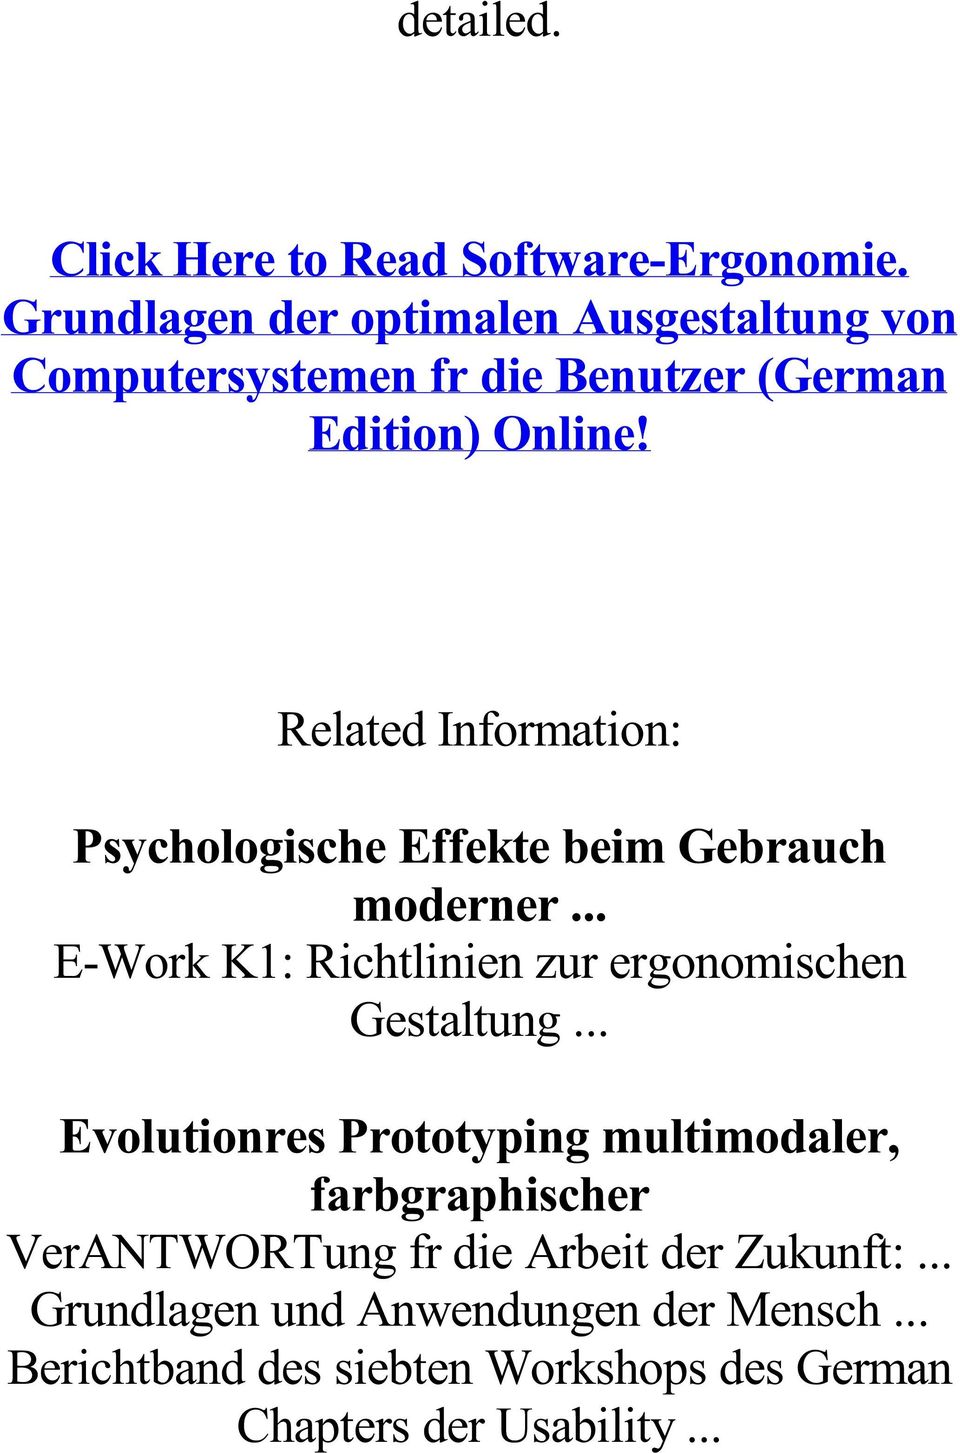 Related Information: Psychologische Effekte beim Gebrauch moderner... E-Work K1: Richtlinien zur ergonomischen Gestaltung.